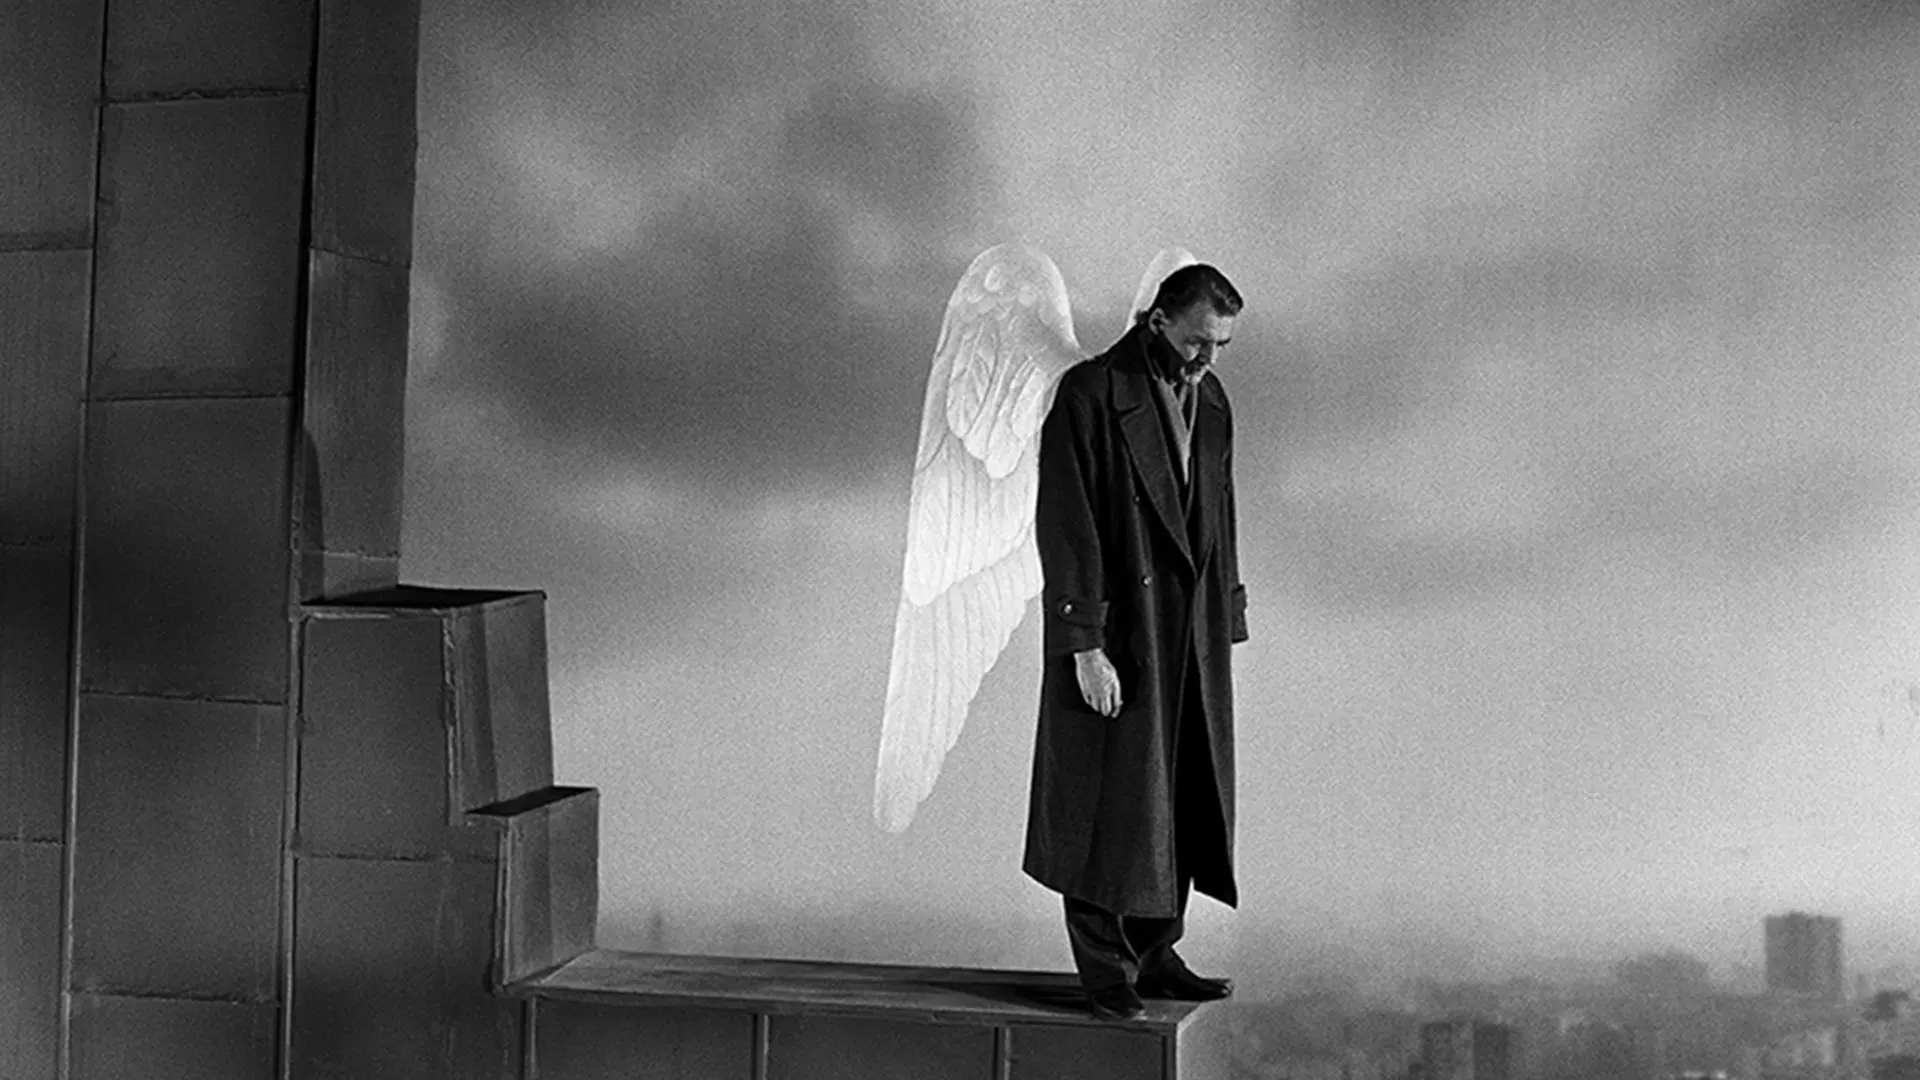 فرشته در حال نگاه کردن در فیلم زیر آسمان برلین